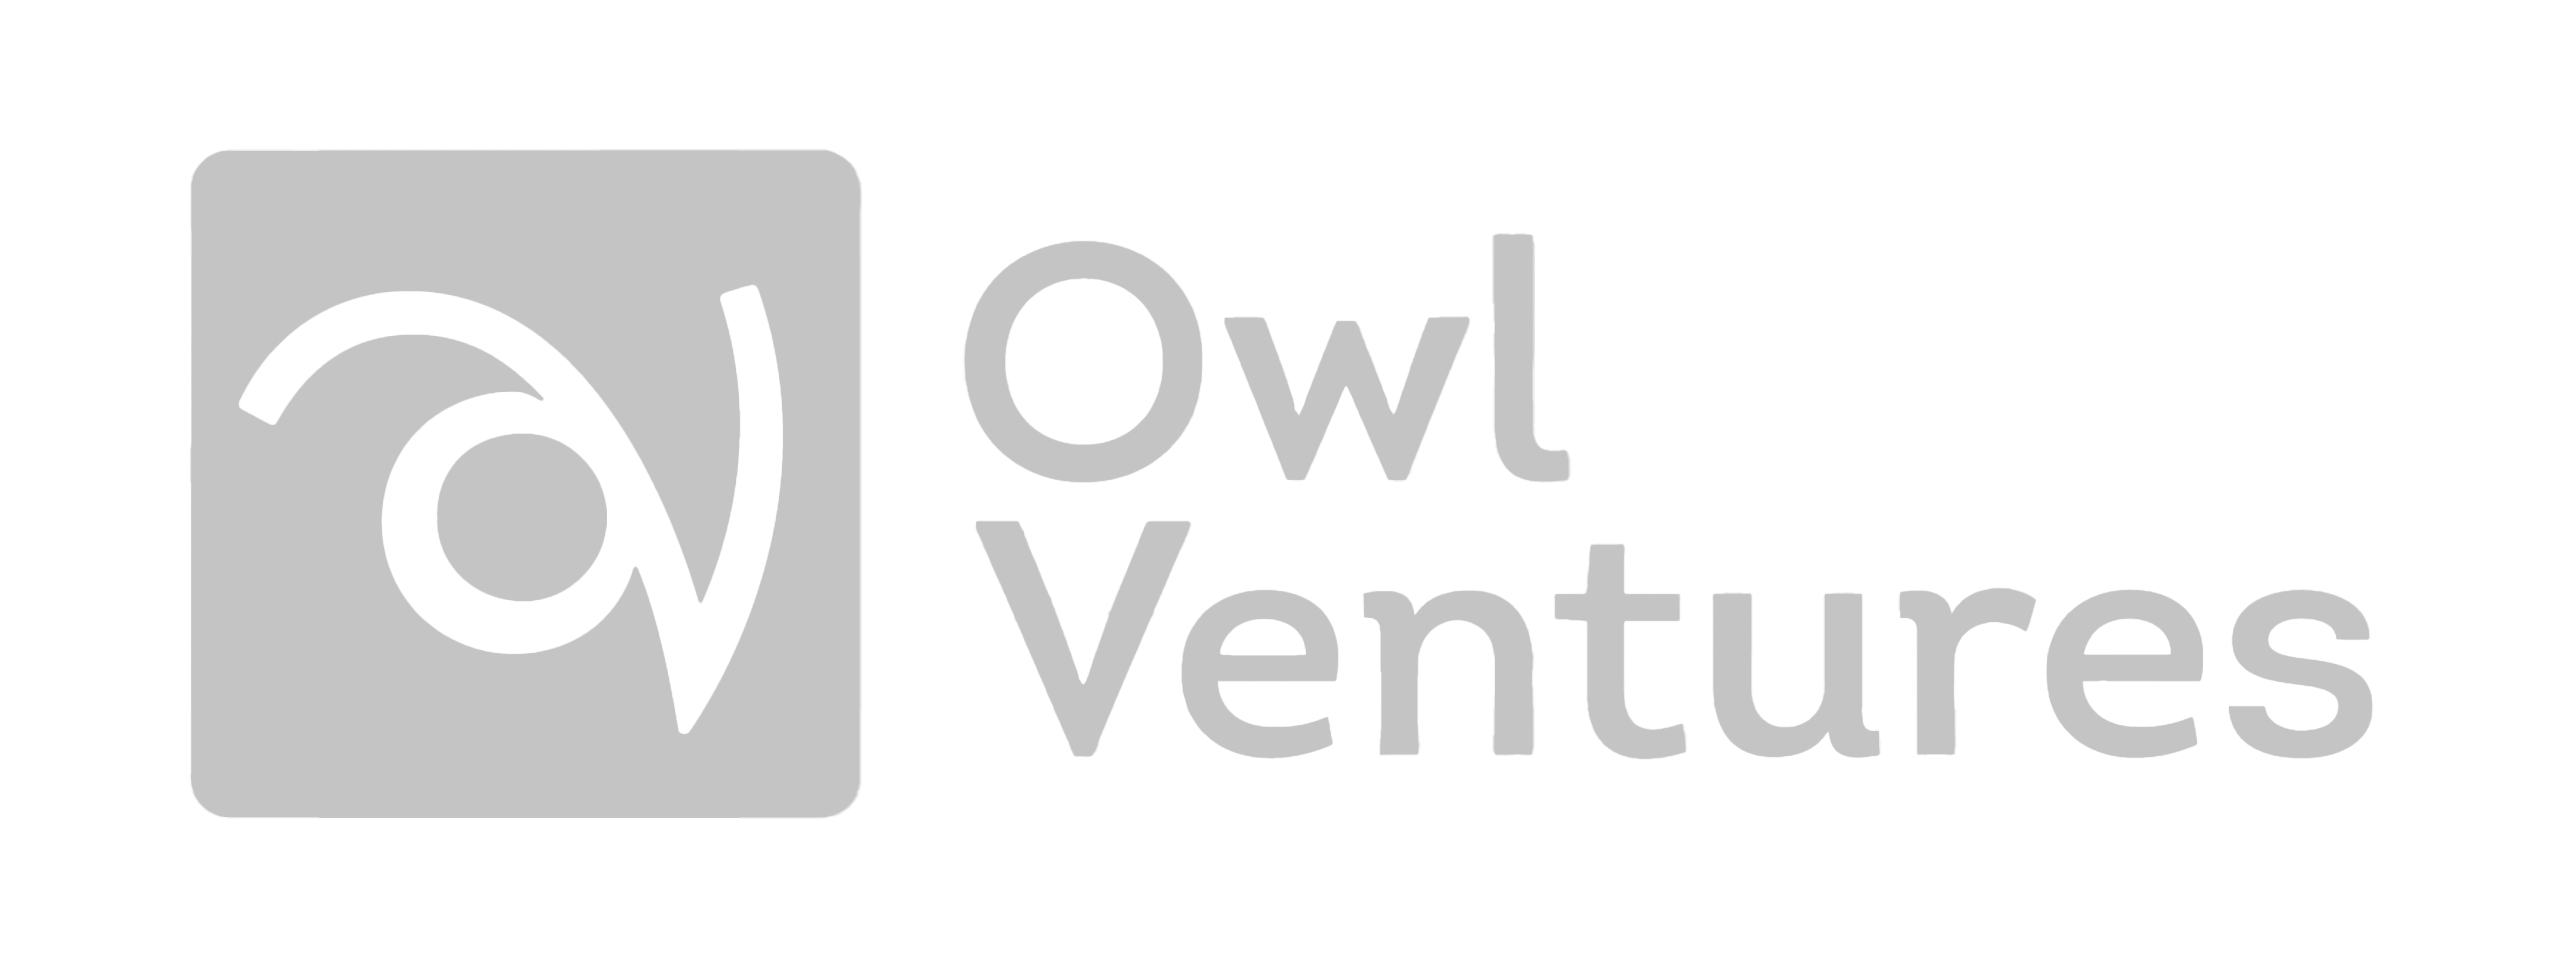 Owl ventures